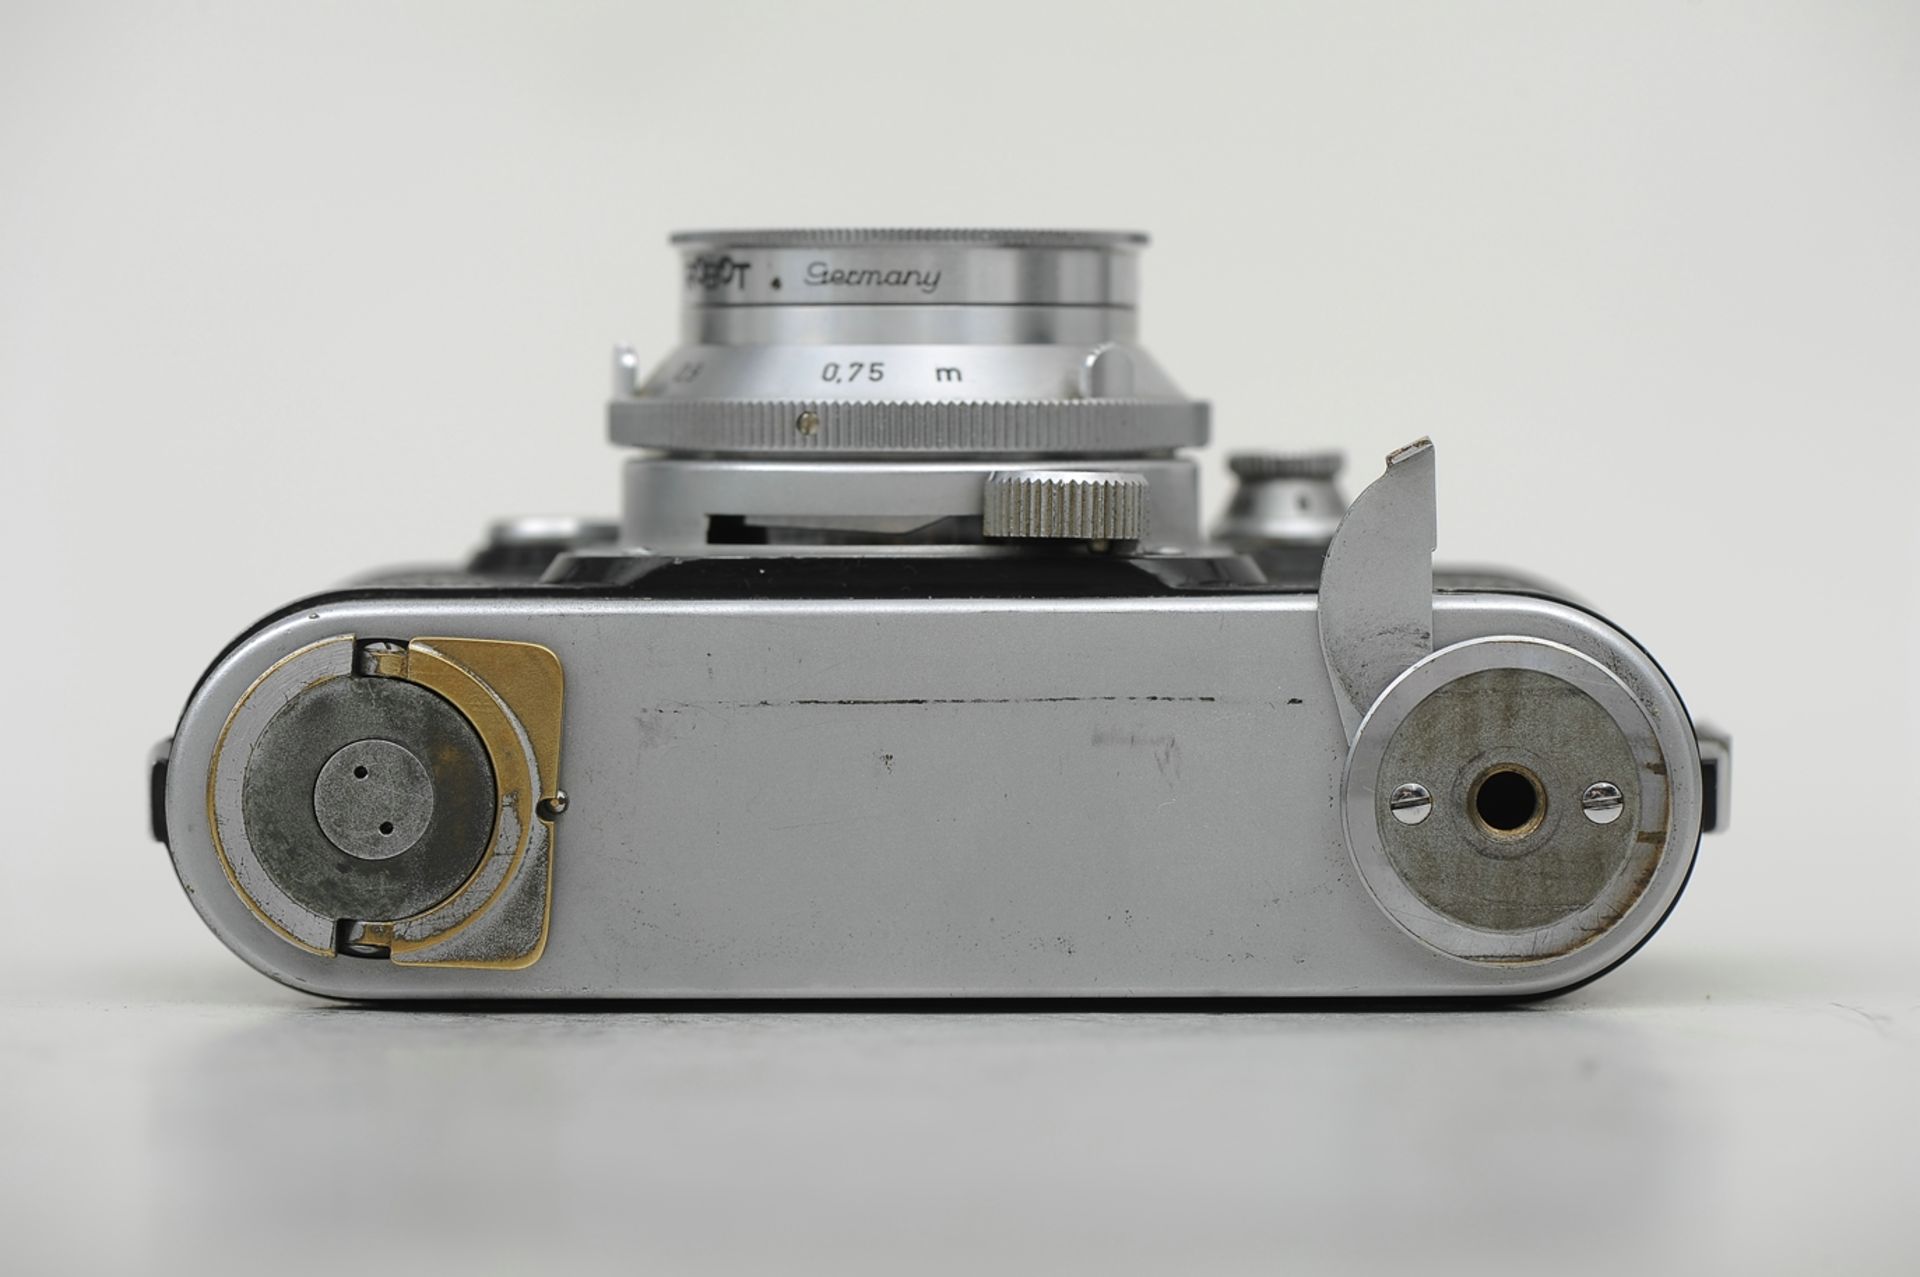 "ROBOT ROYAL 36" Modell Z - 149441, mit "Schneider-Kreuznach"-Objektiv, Xenon 1:1,9/40, No. 3533741 - Image 5 of 8